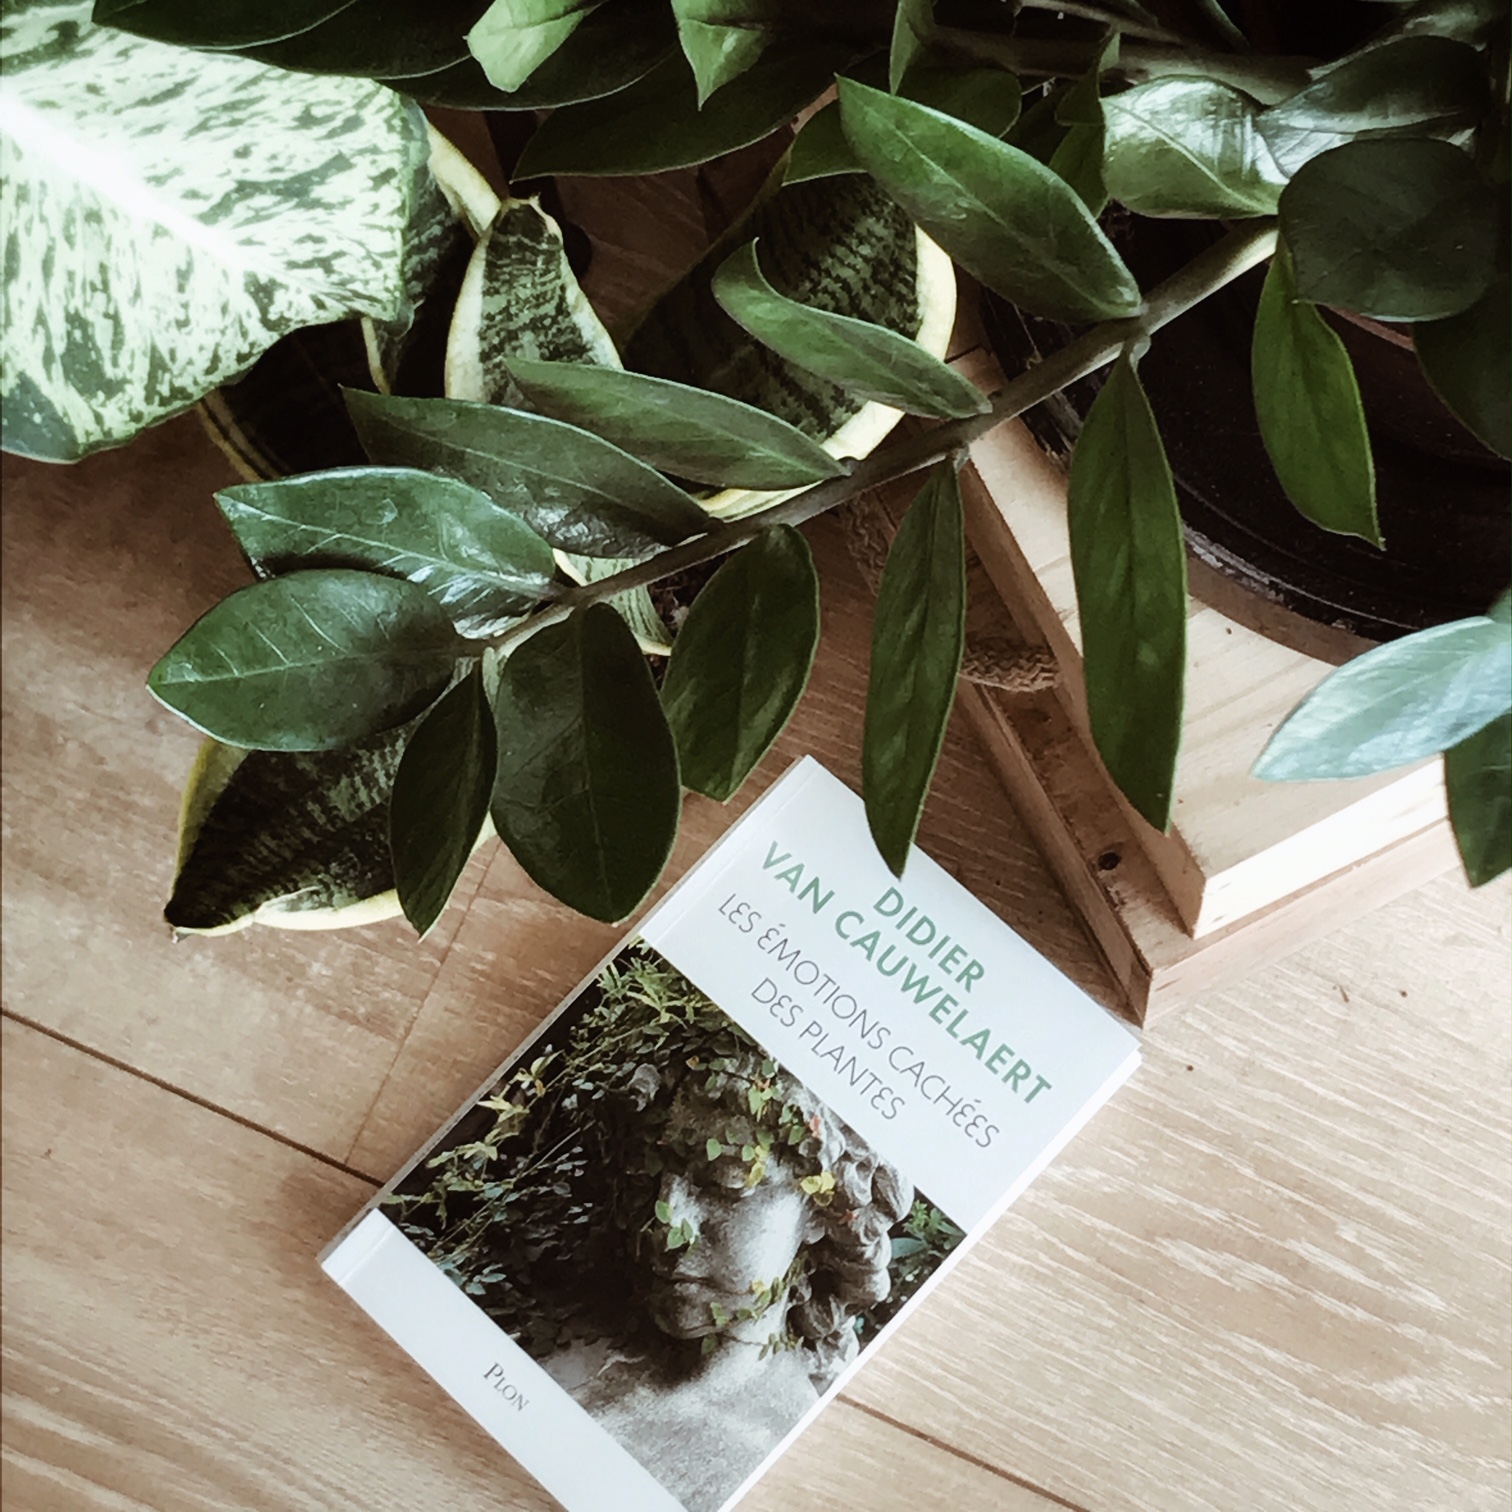 Les émotions cachées des plantes, de Didier van Cauwelaert : les végétaux ont-ils une âme ?